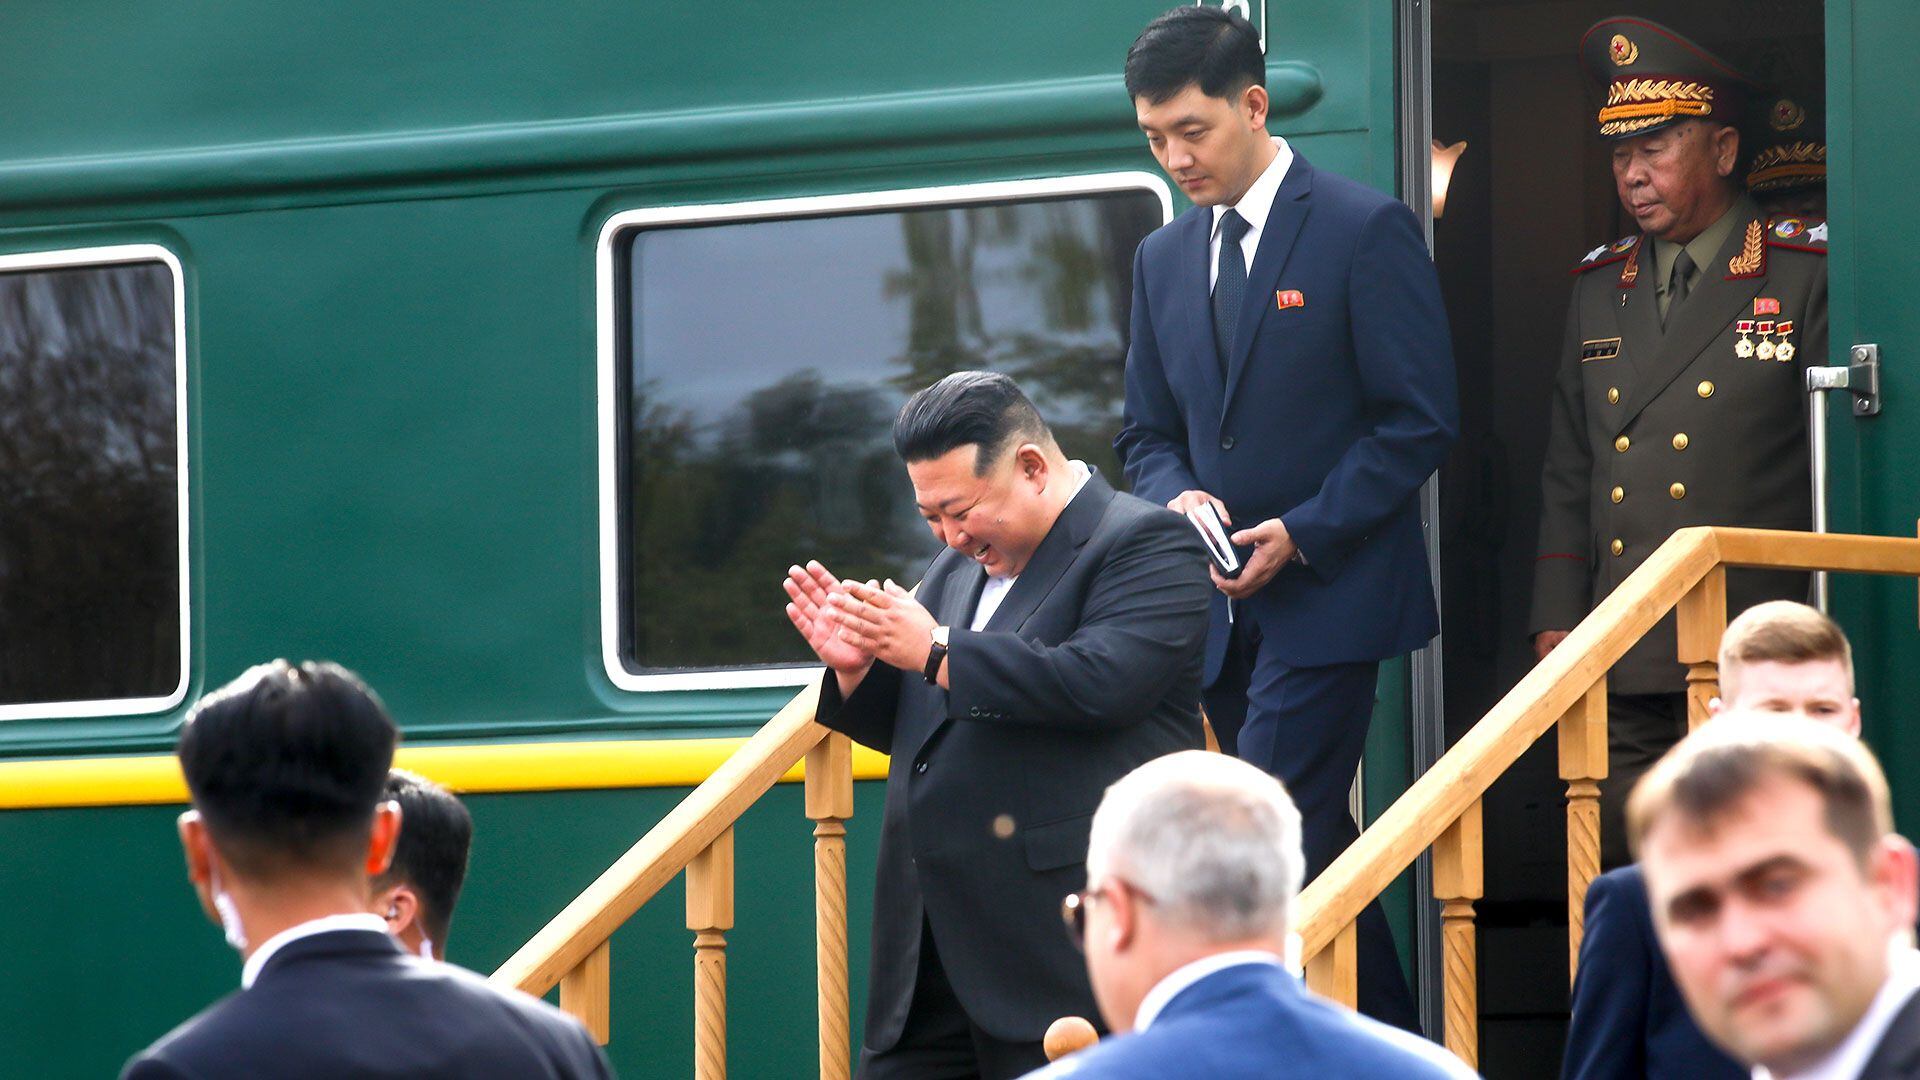 Kim Jong-un sonríe al llegar a una de sus paradas en la visita (AP)